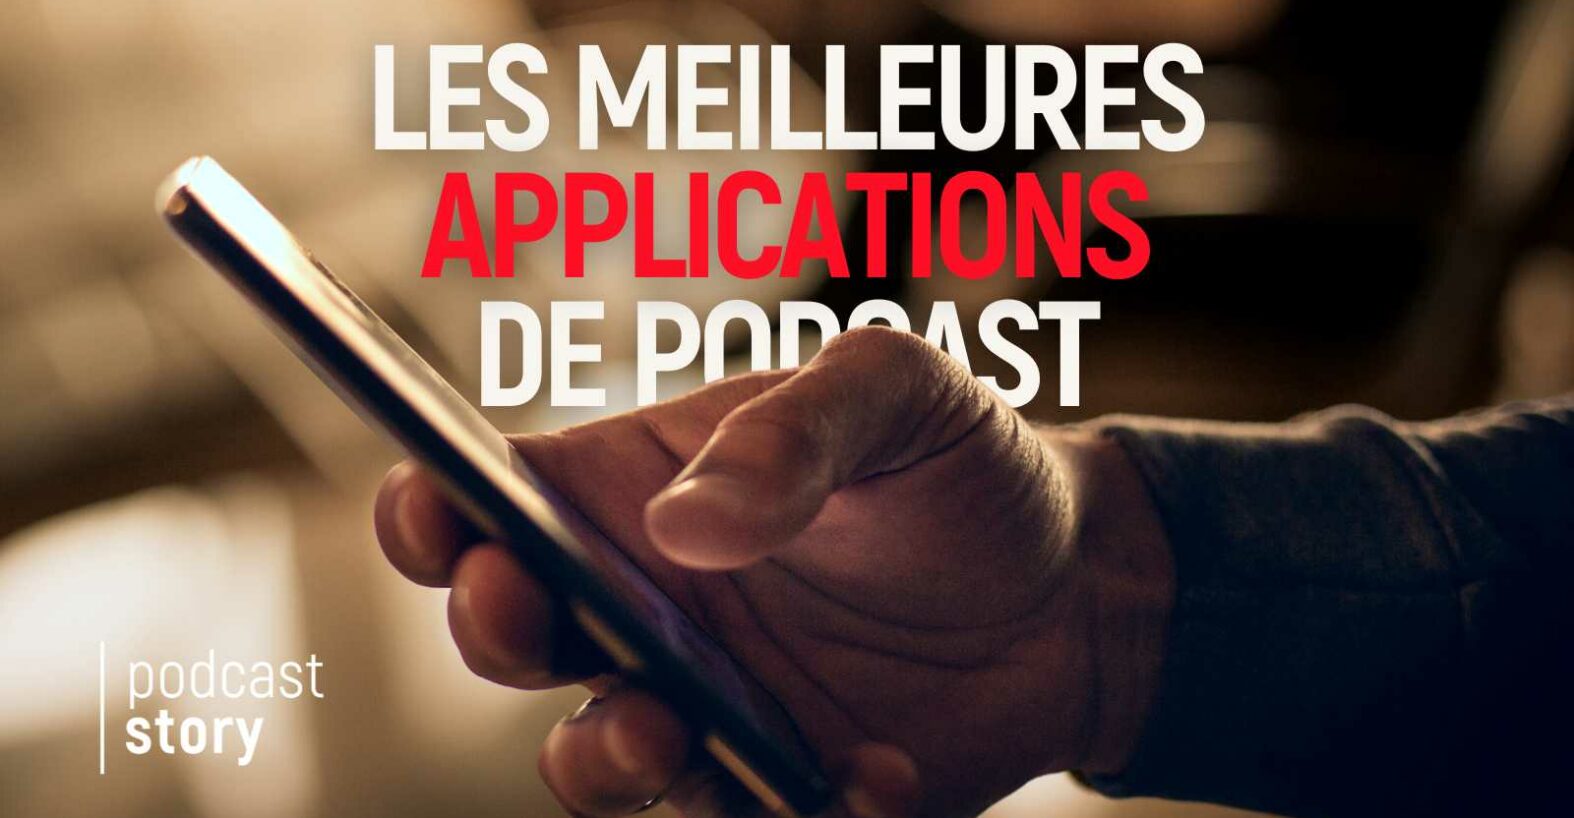 Les meilleures applications de podcast